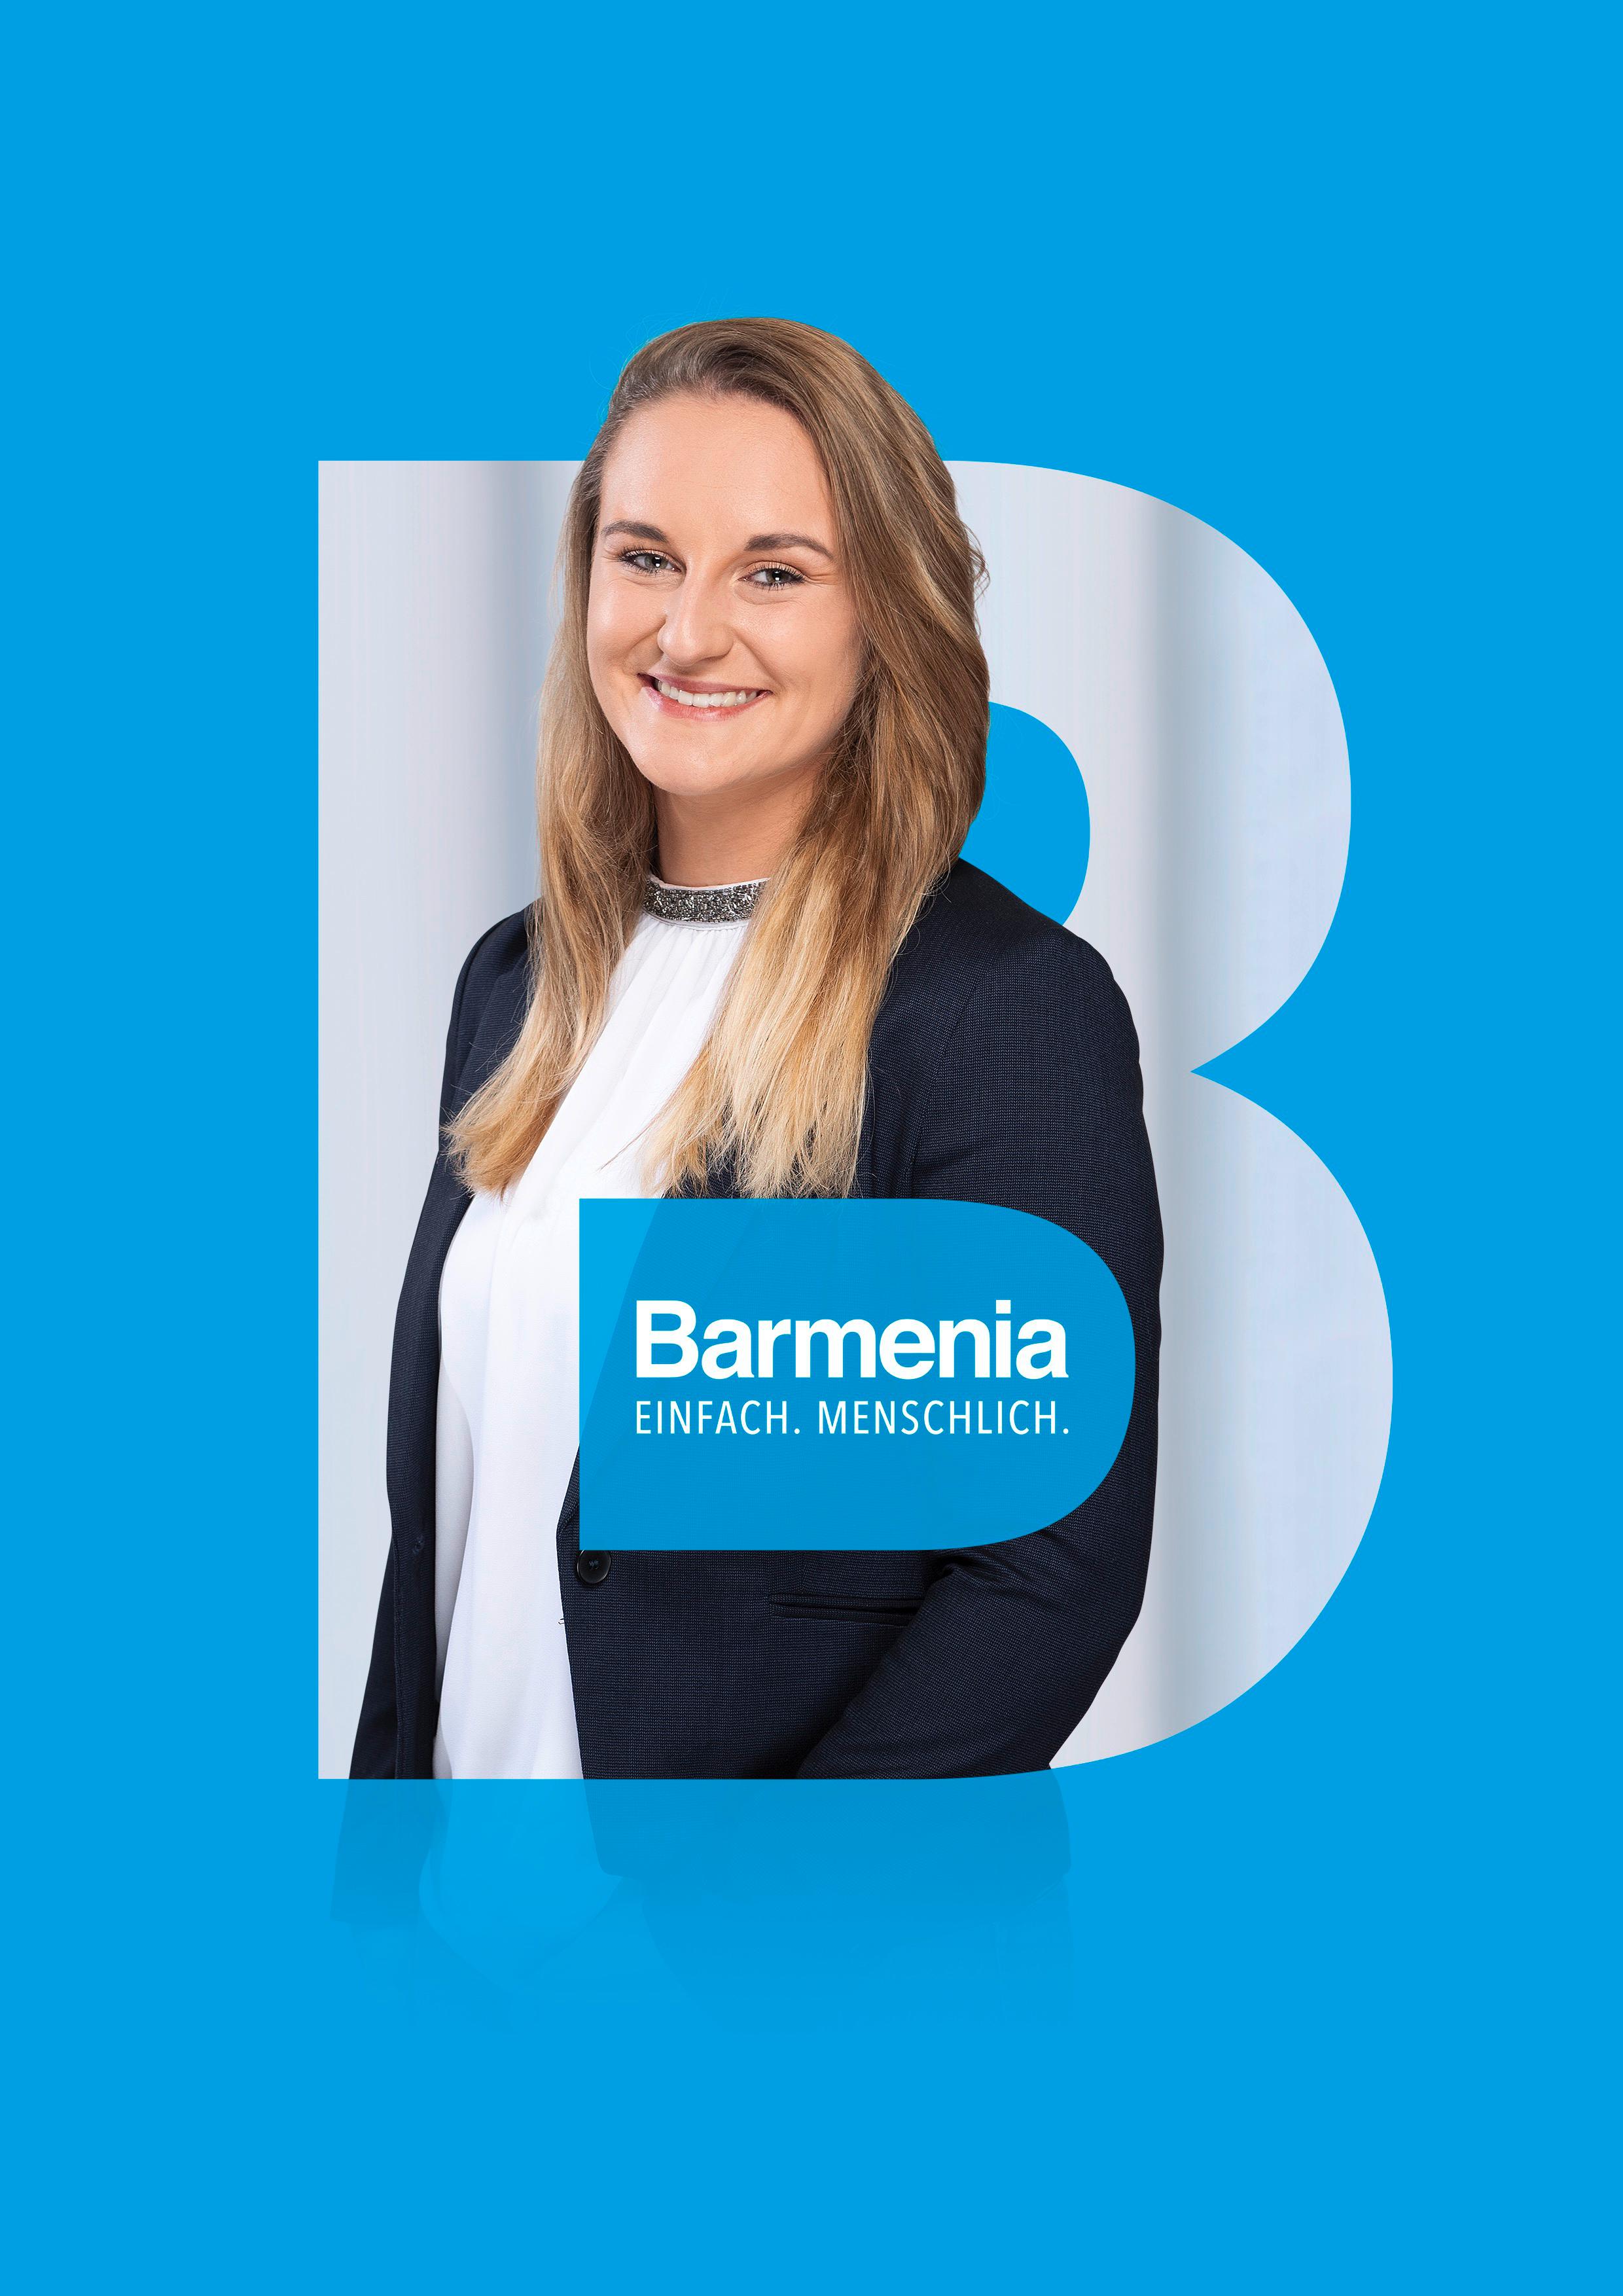 Barmenia Versicherung - Irina Plaga, Derendorfer Allee 33 in Düsseldorf